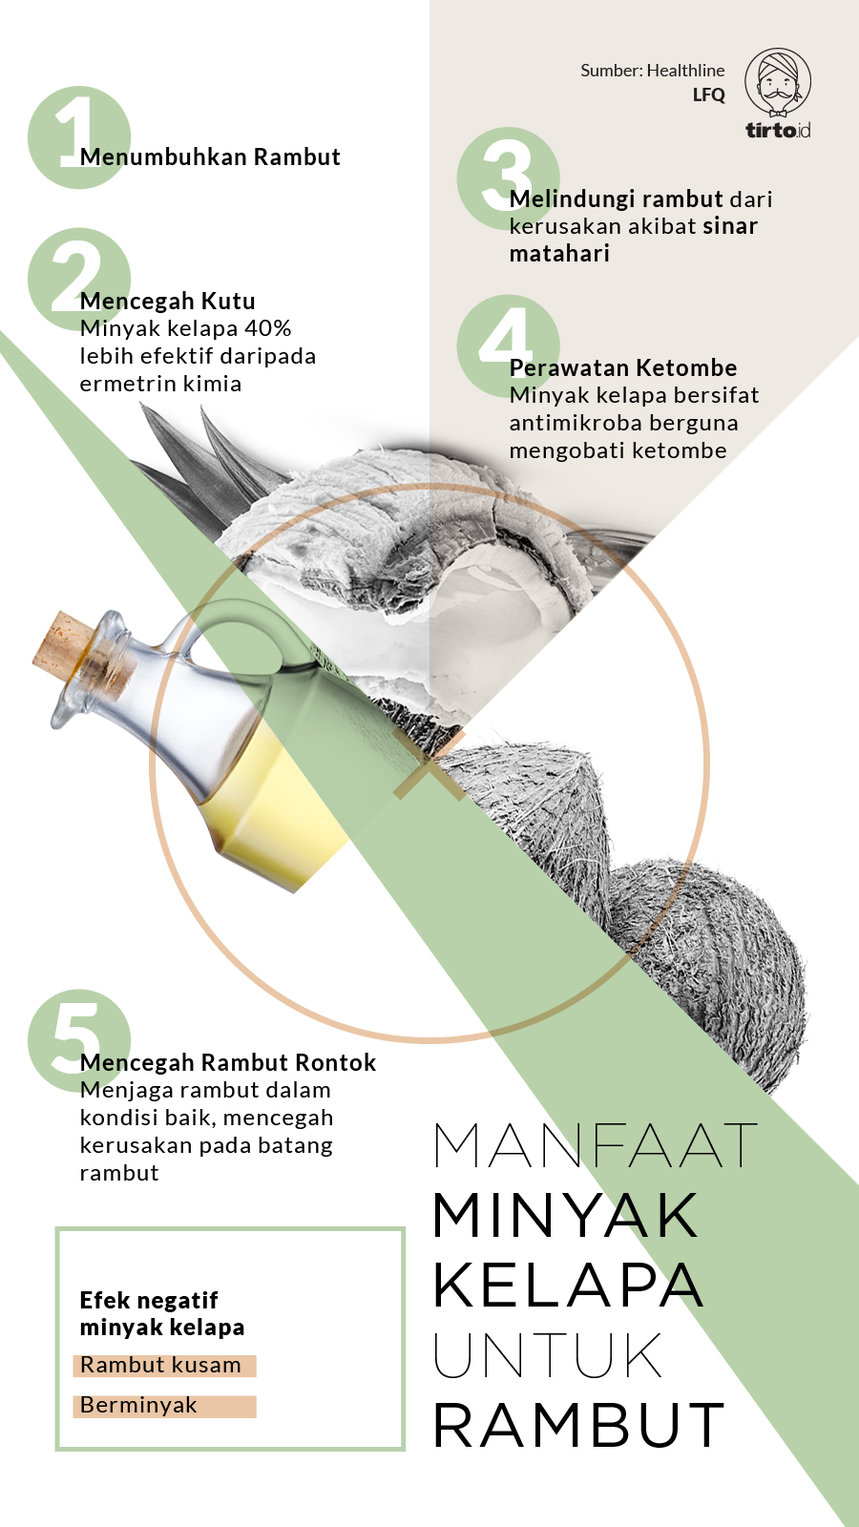 Infografik Manfaat Minyak Kelapa Untuk Rambut